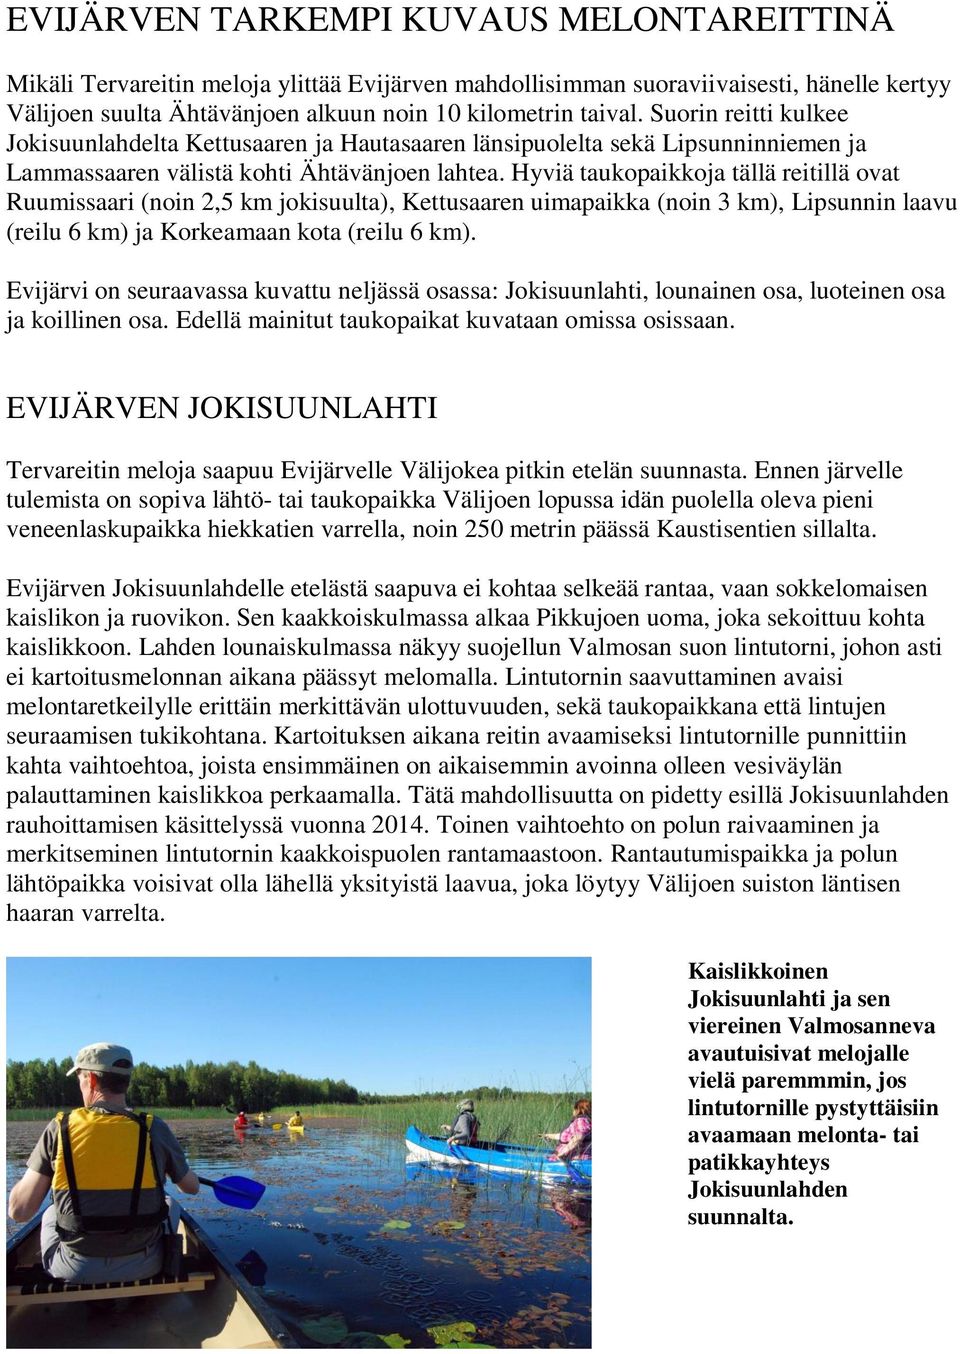 Hyviä taukopaikkoja tällä reitillä ovat Ruumissaari (noin 2,5 km jokisuulta), Kettusaaren uimapaikka (noin 3 km), Lipsunnin laavu (reilu 6 km) ja Korkeamaan kota (reilu 6 km).